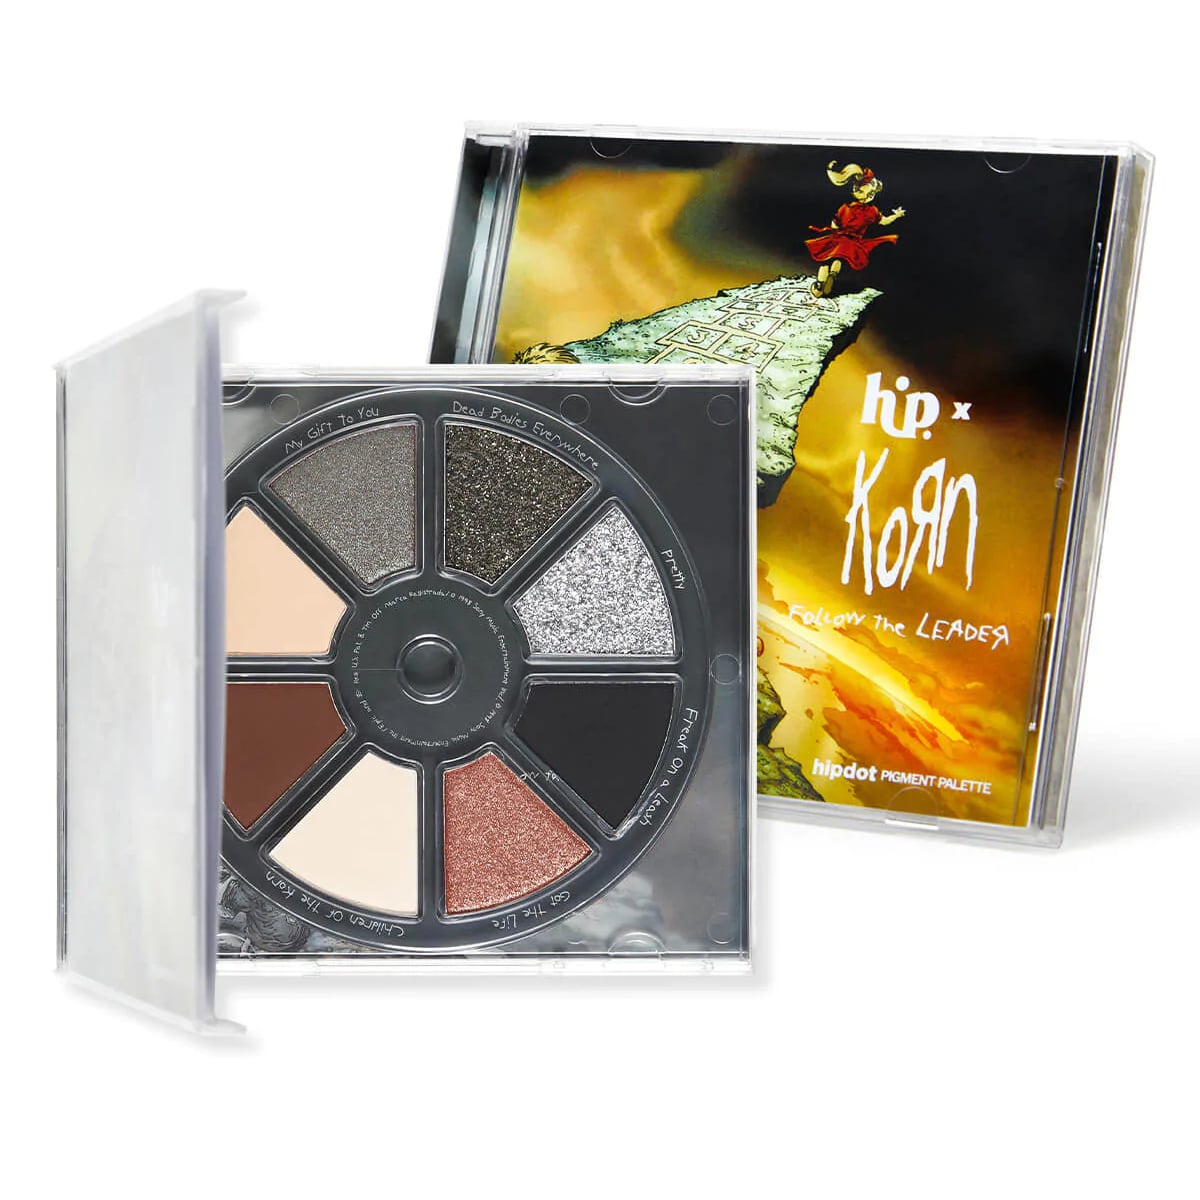 Hipdot x Korn Makeup Palette Details | Beauty